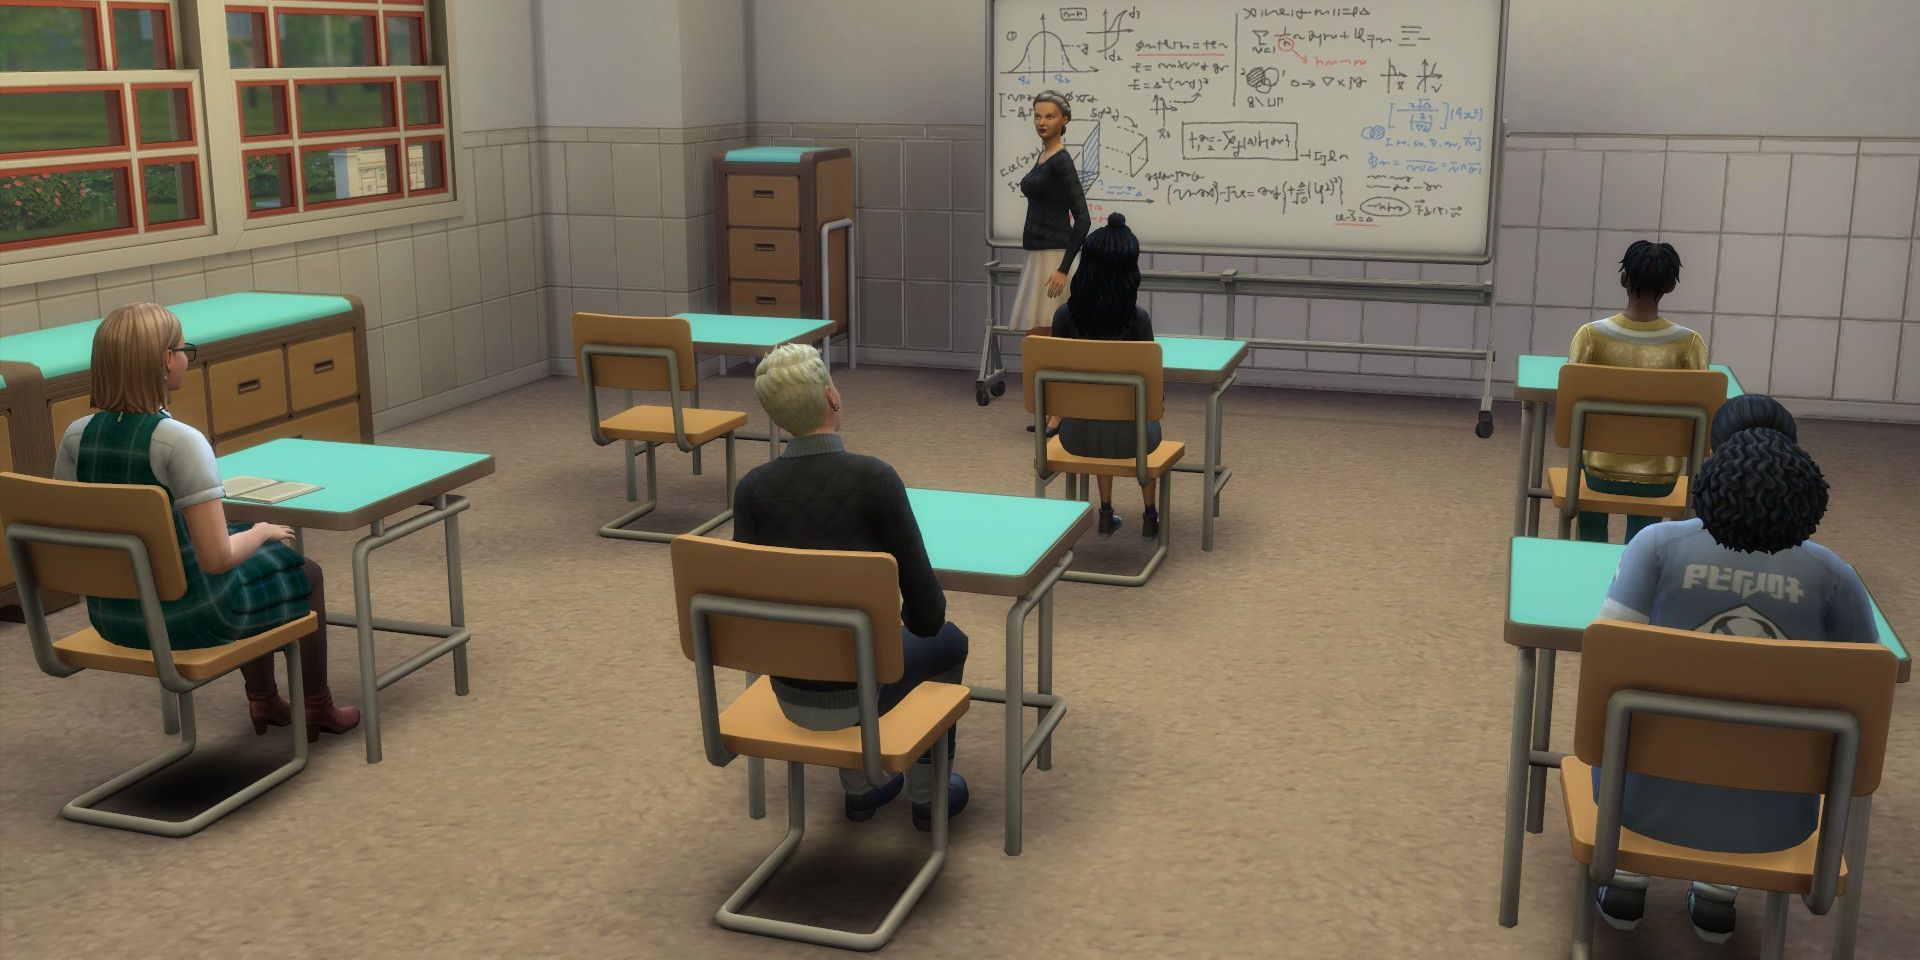 Estudiantes sentados en un aula del videojuego Sims 4